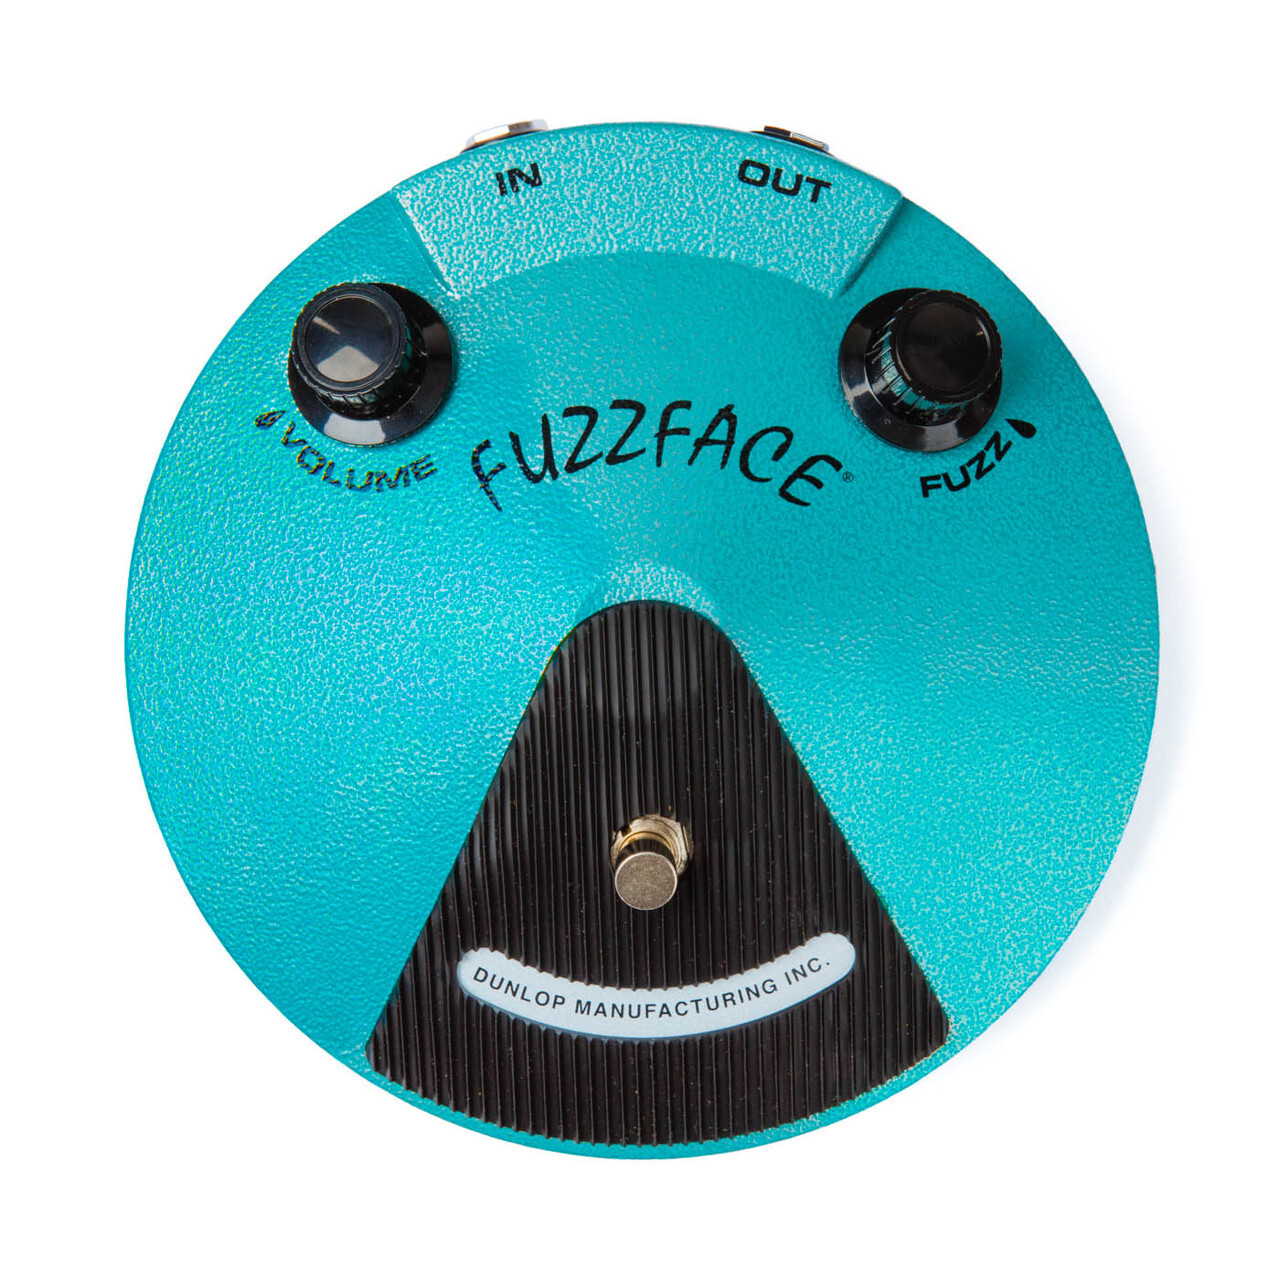 Jimi Hendrix Fuzz Face Guitar Pedal